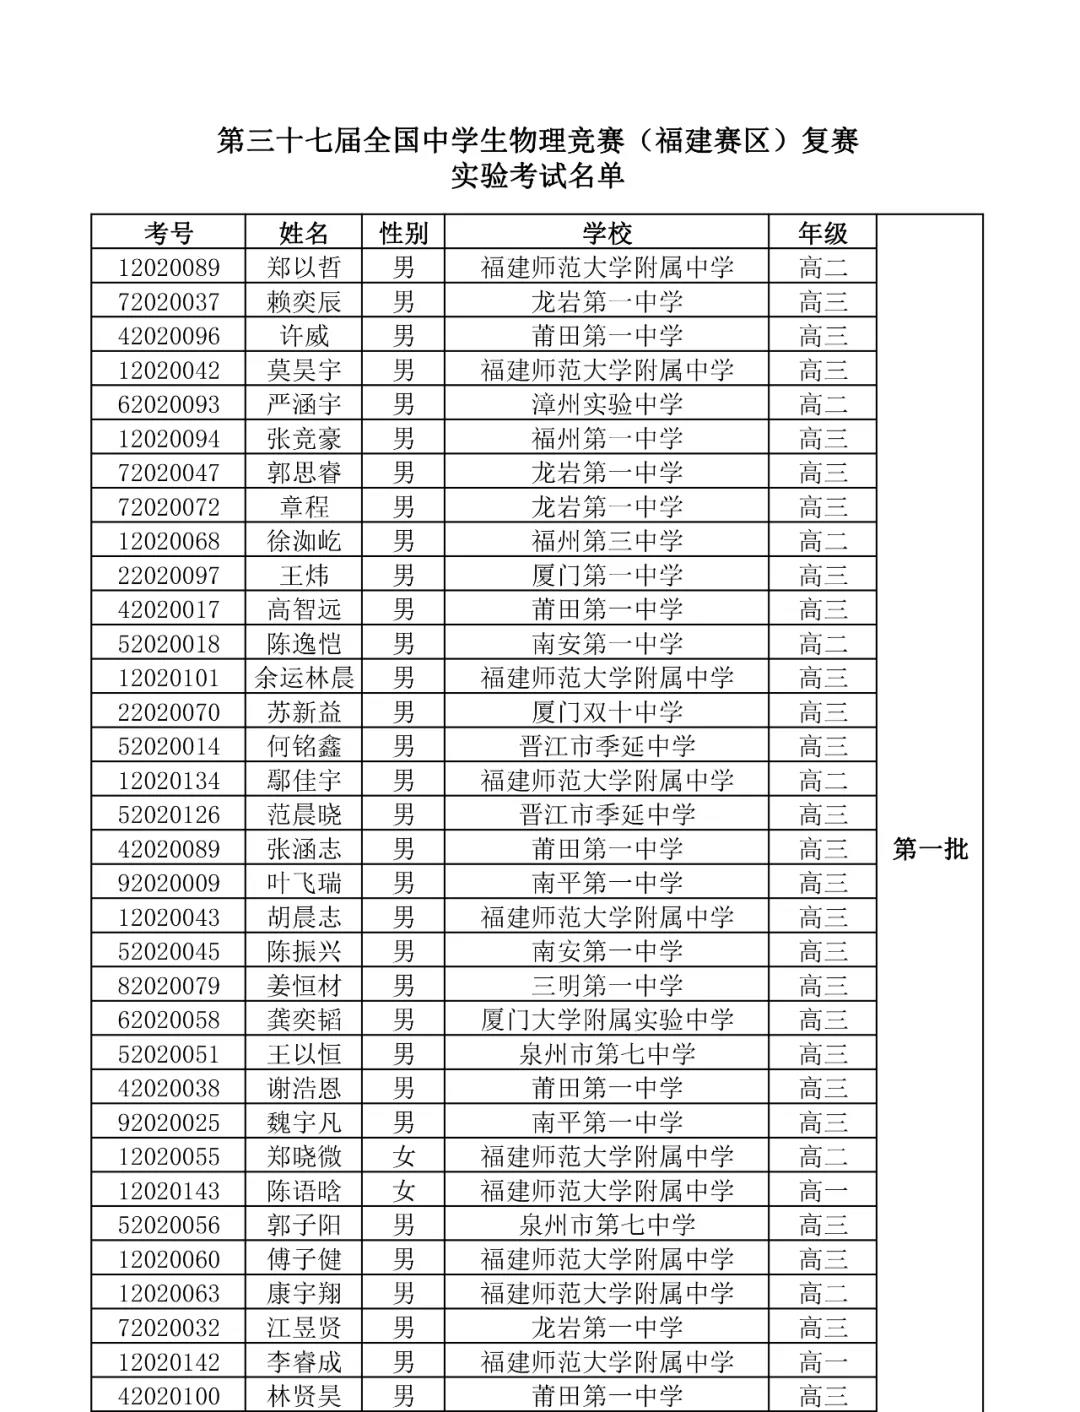 福建省2020年第37届中学生物理竞赛复赛实验考试名单